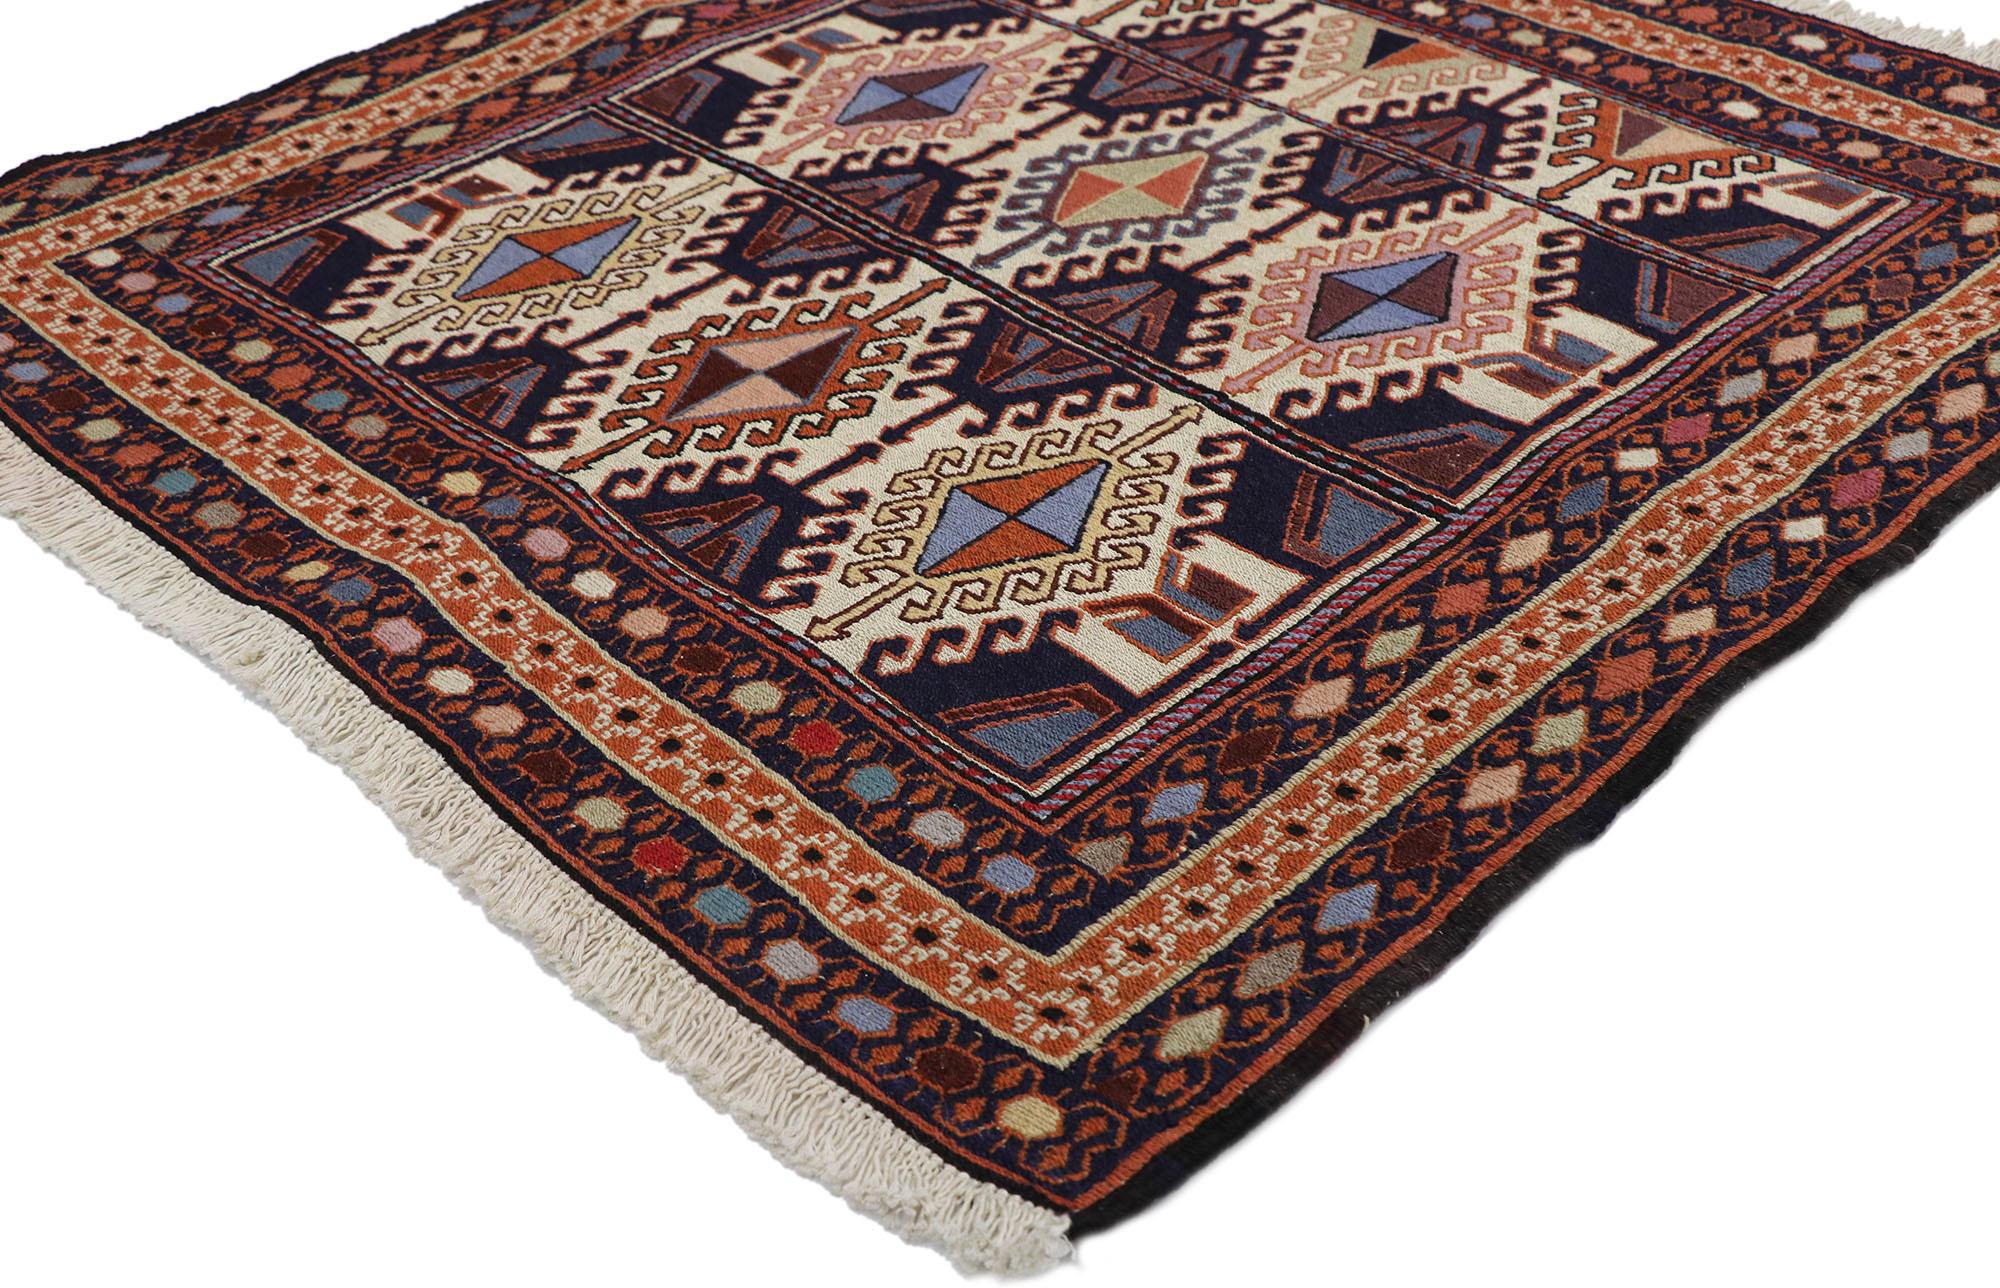 78039 vintage Persian Shiraz Kilim rug with Tribal style 02'11 x 03'01. Plein de petits détails et un design expressif audacieux combiné avec des couleurs vibrantes et un style tribal, ce tapis kilim persan vintage en laine tissé à la main est une